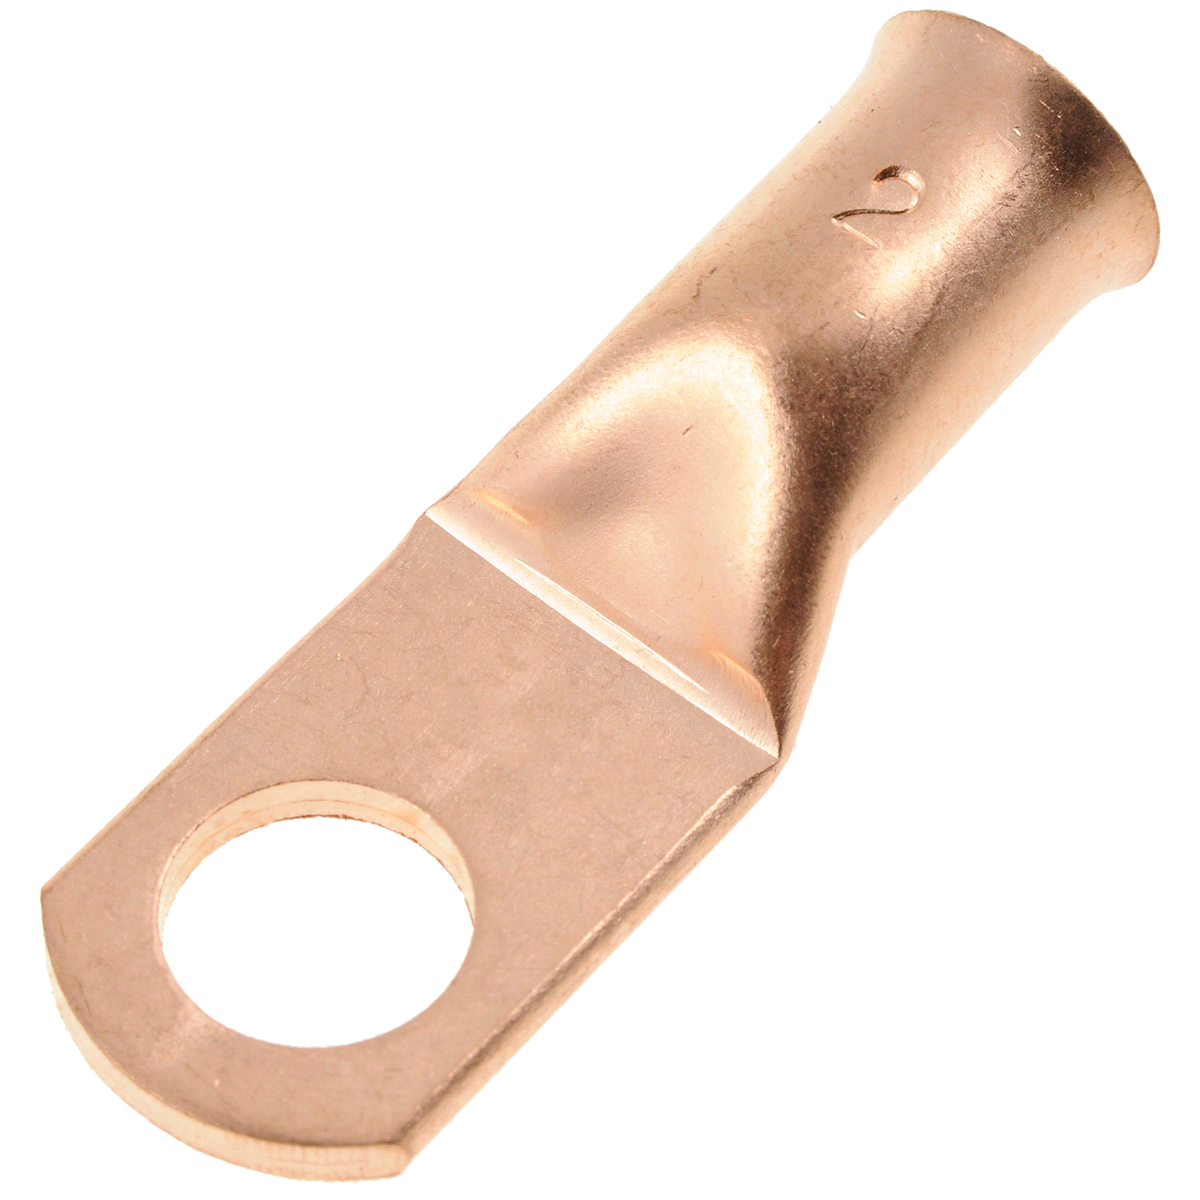 slide 1 of 1, Dorman 2 Gauge Copper Ring Lug 3/8 in., 1 ct